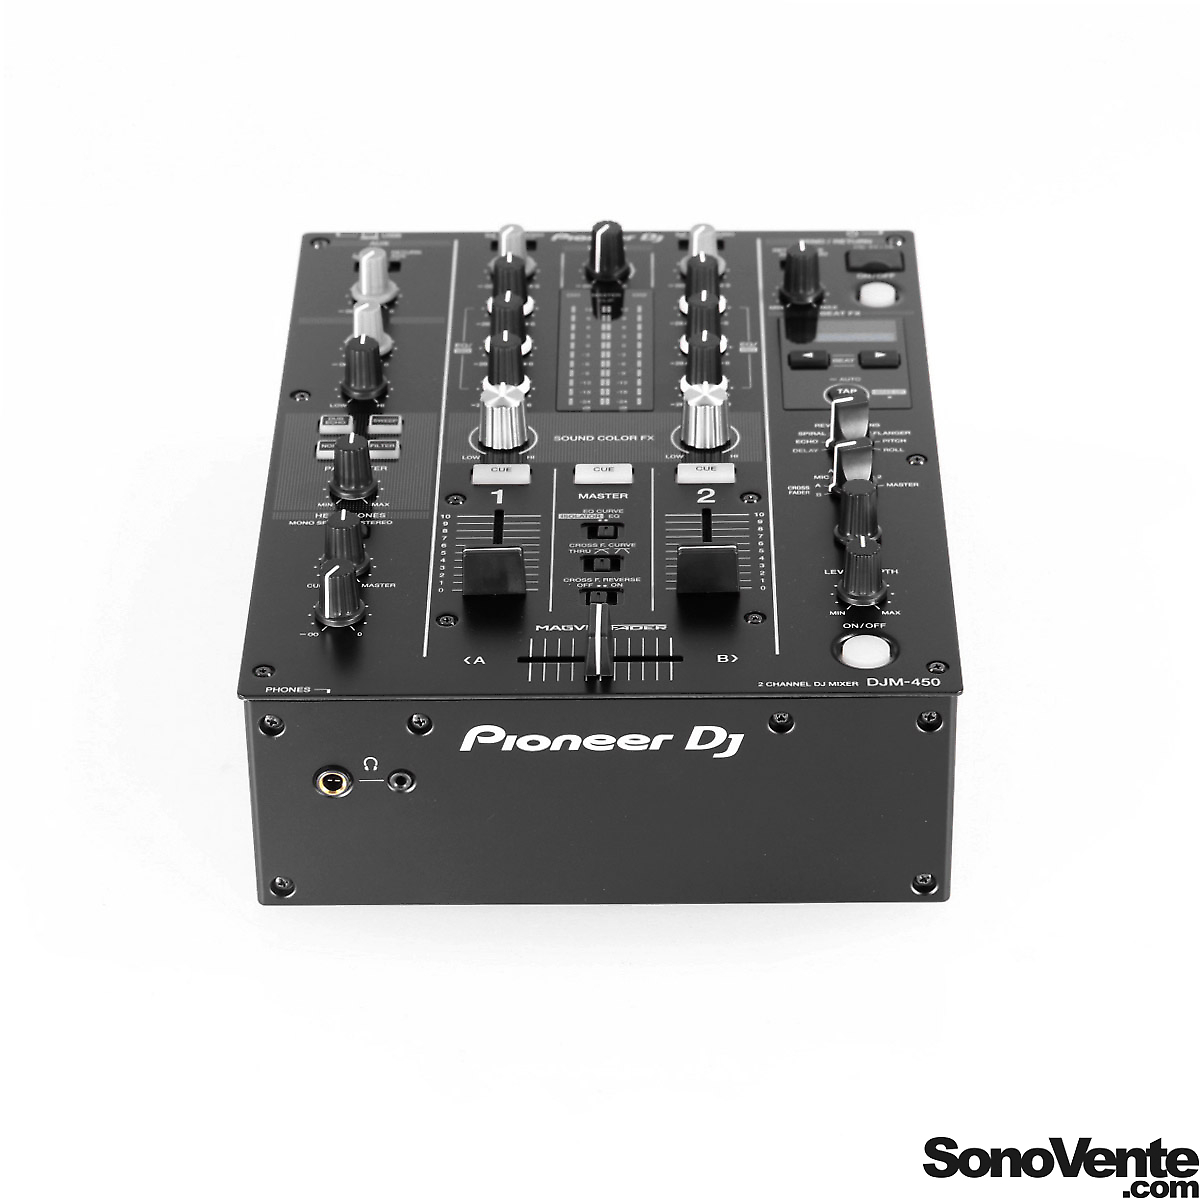 DJM 450 Pioneer DJ